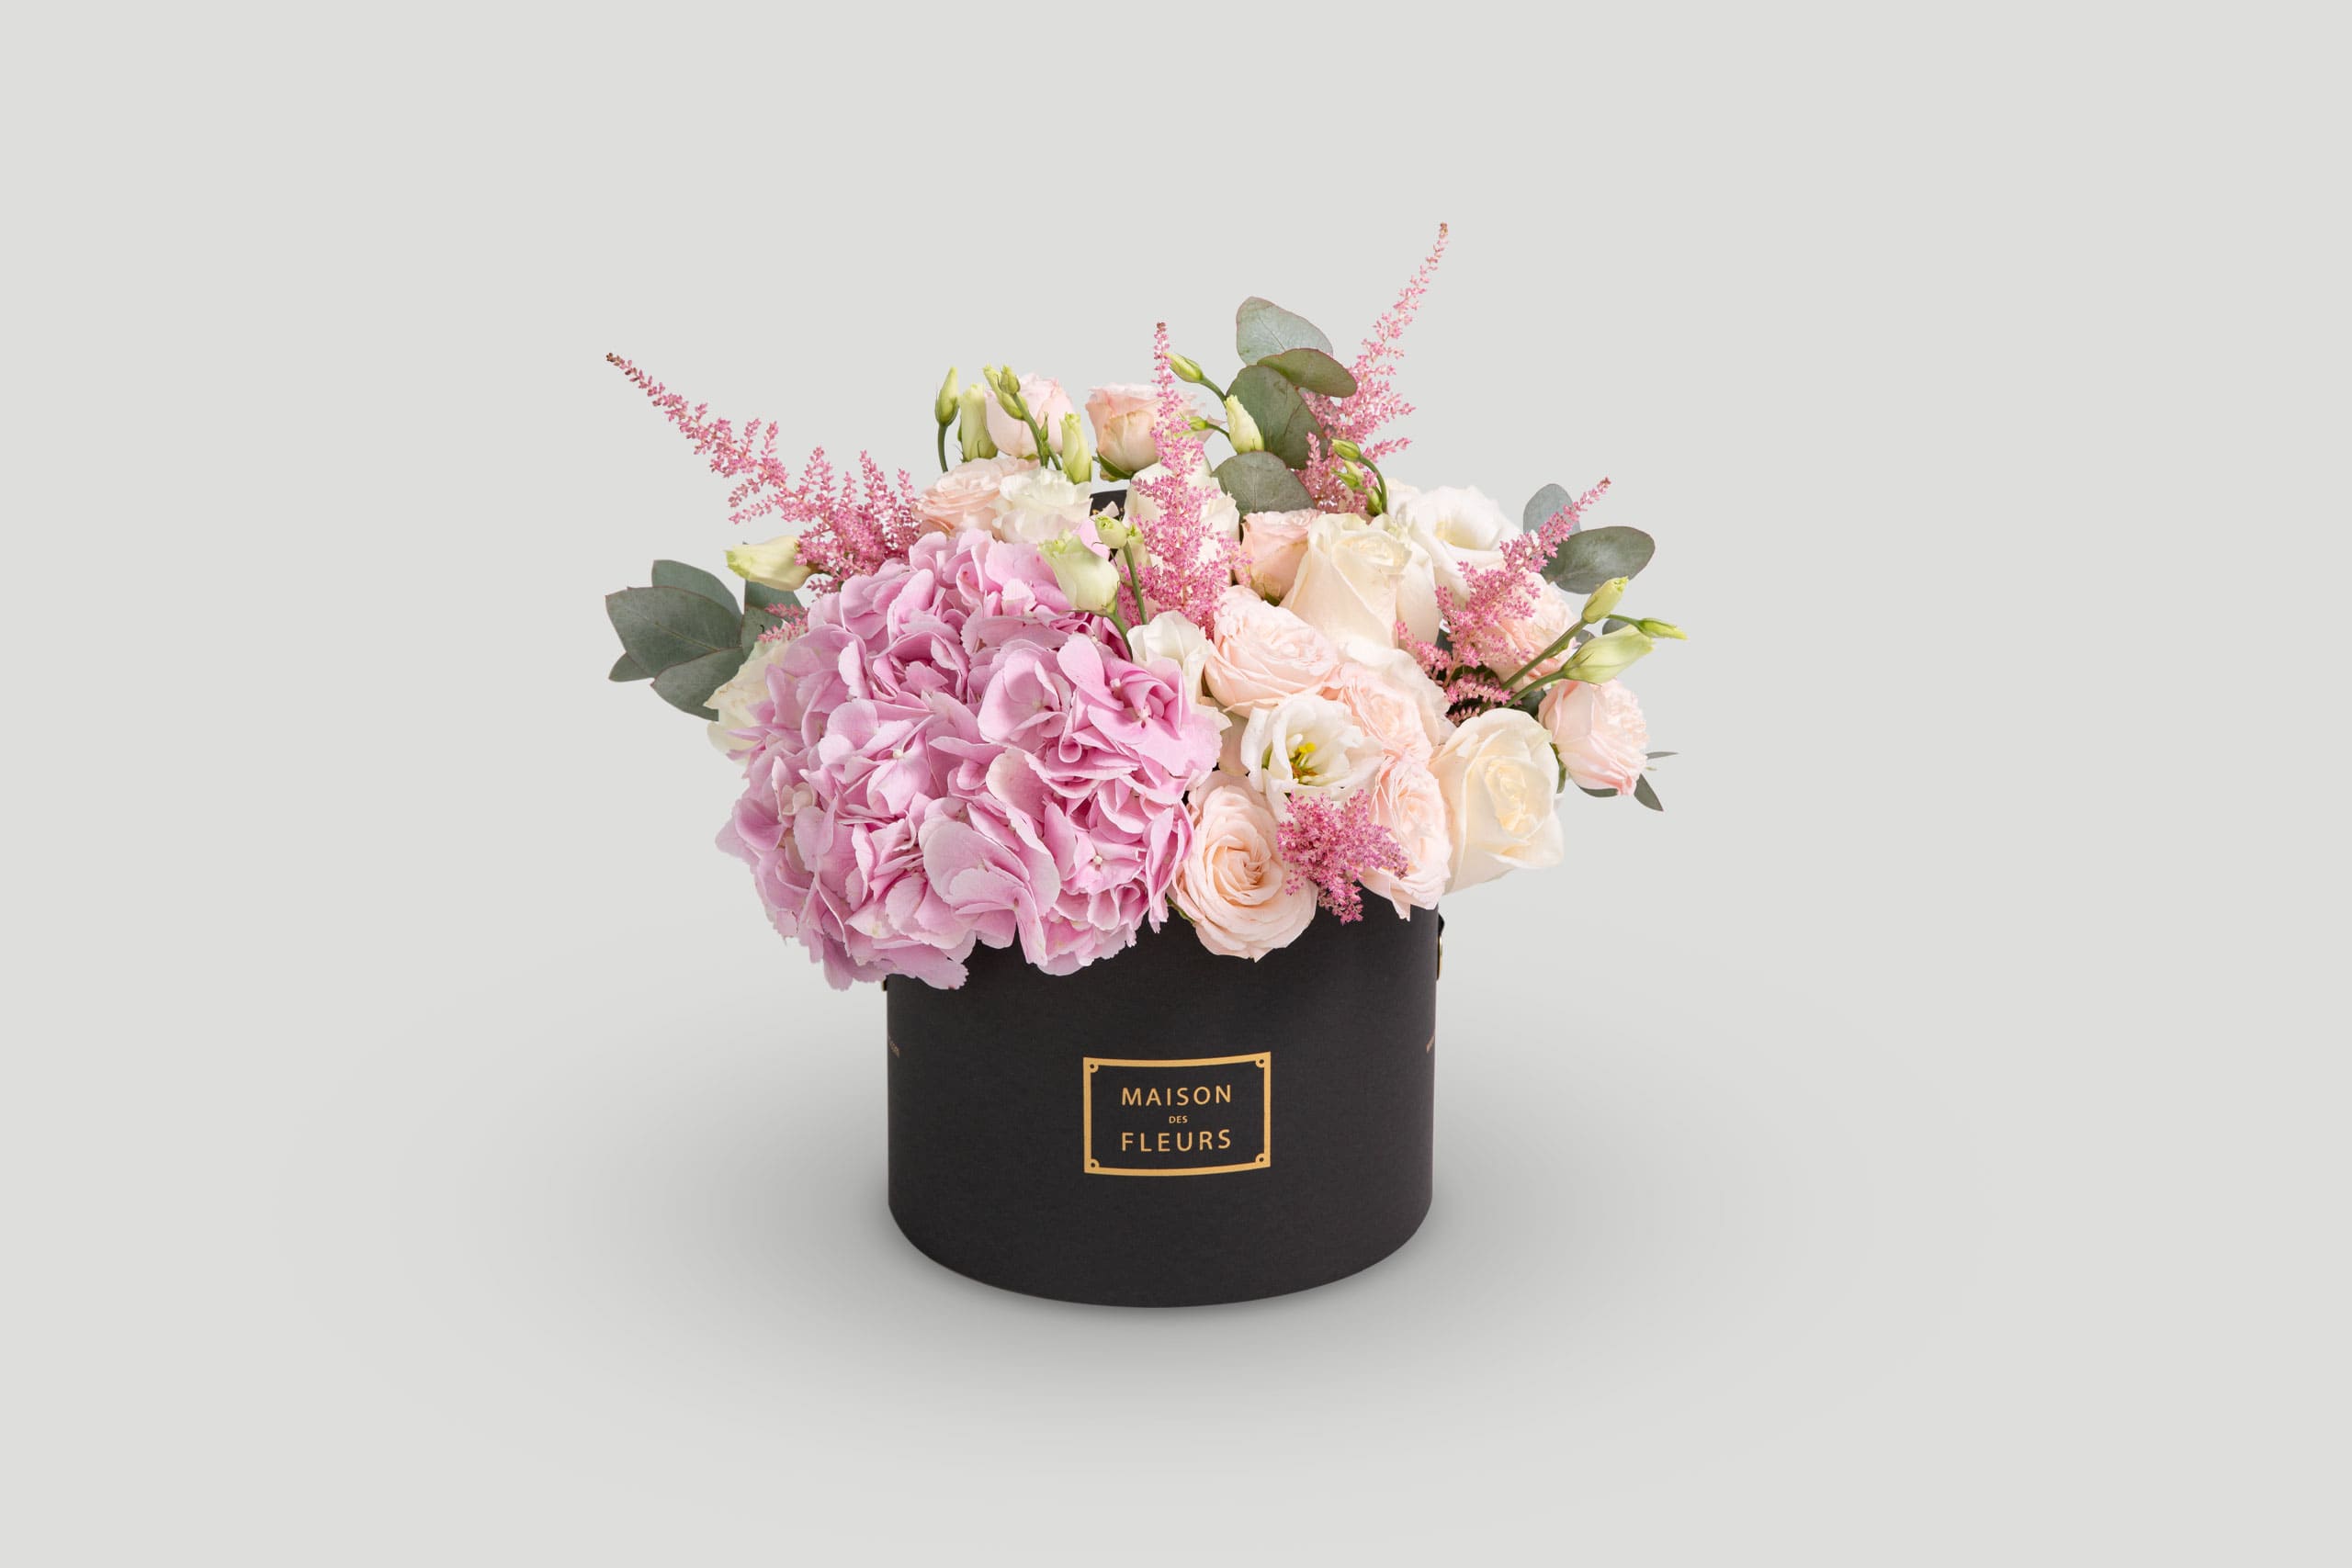 Luxury Flower Arrangement in a White Round Box